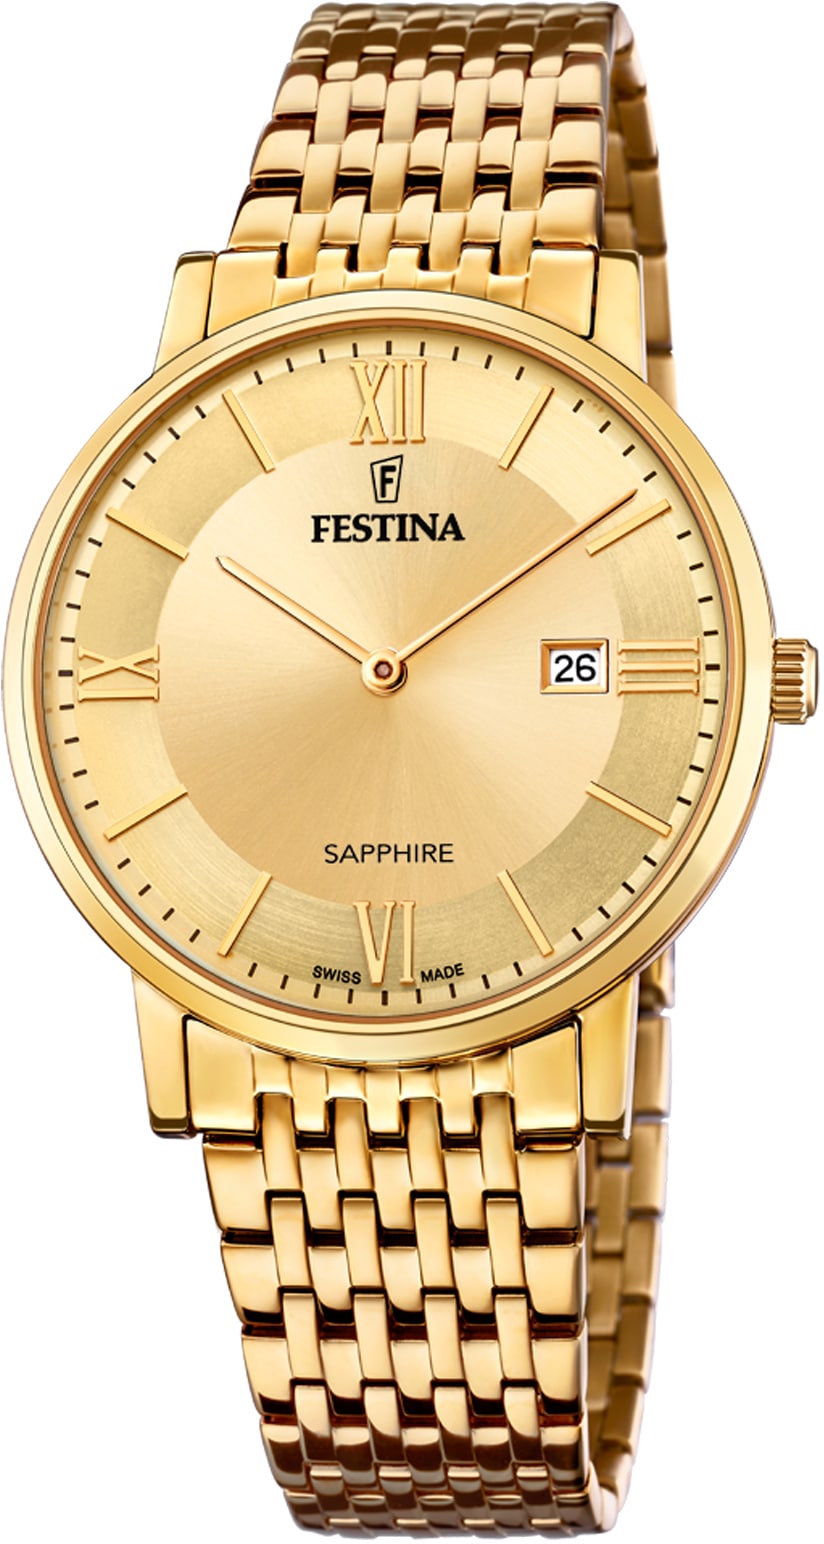 Made, »Festina Swiss online Festina F20020/2« bei OTTO Schweizer bestellen Uhr